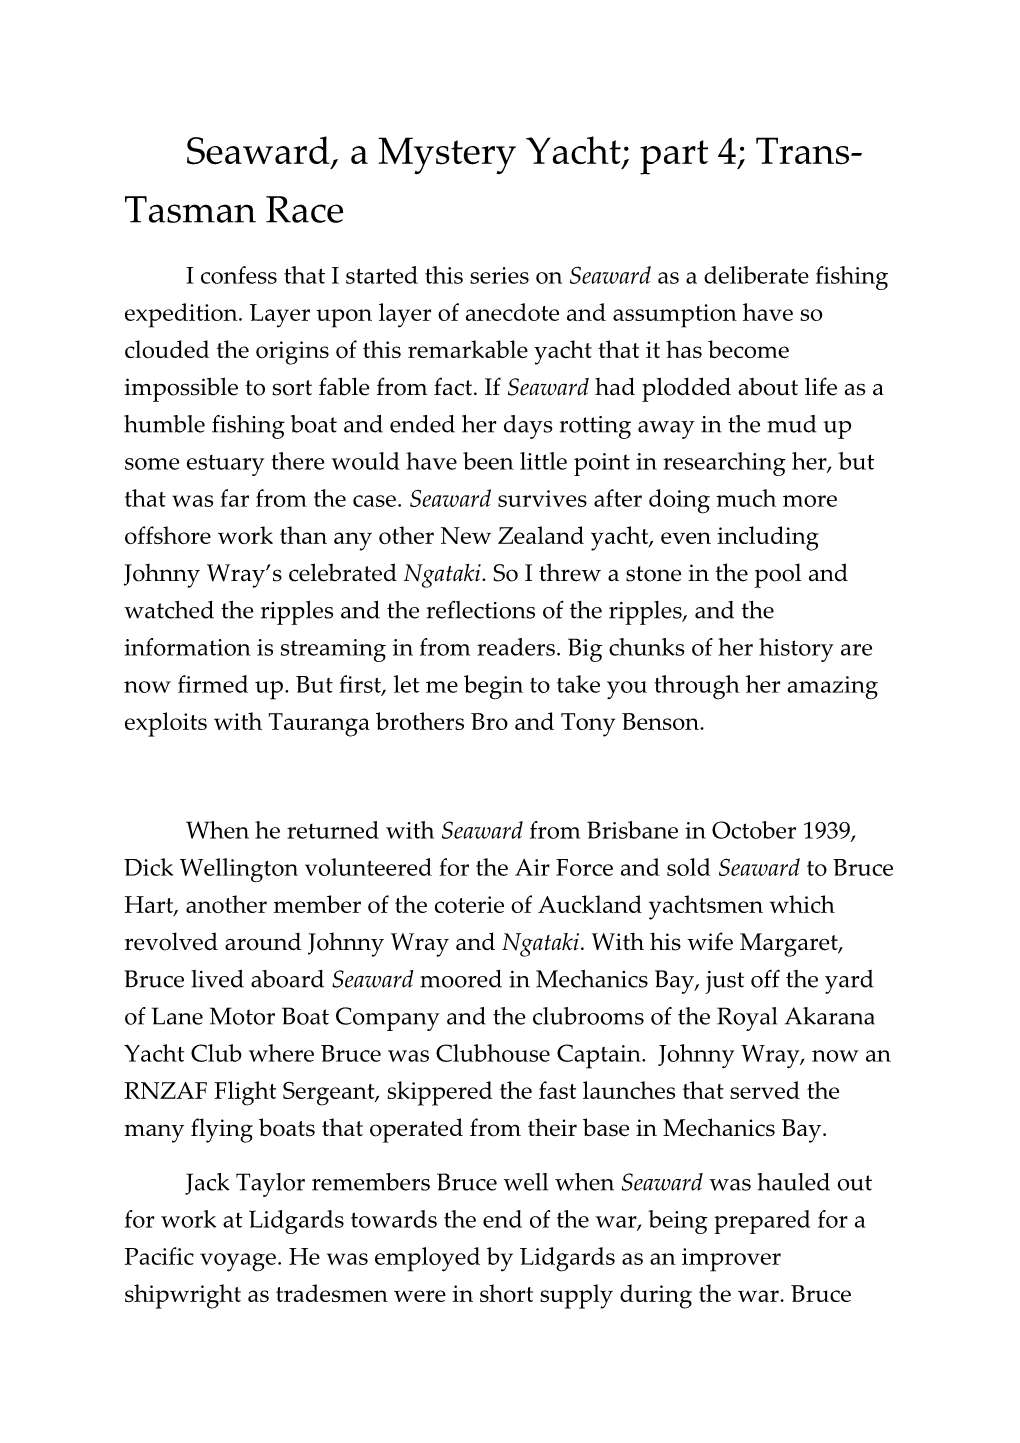 Seaward, a Mystery Yacht; Part 4; Trans-Tasman Race